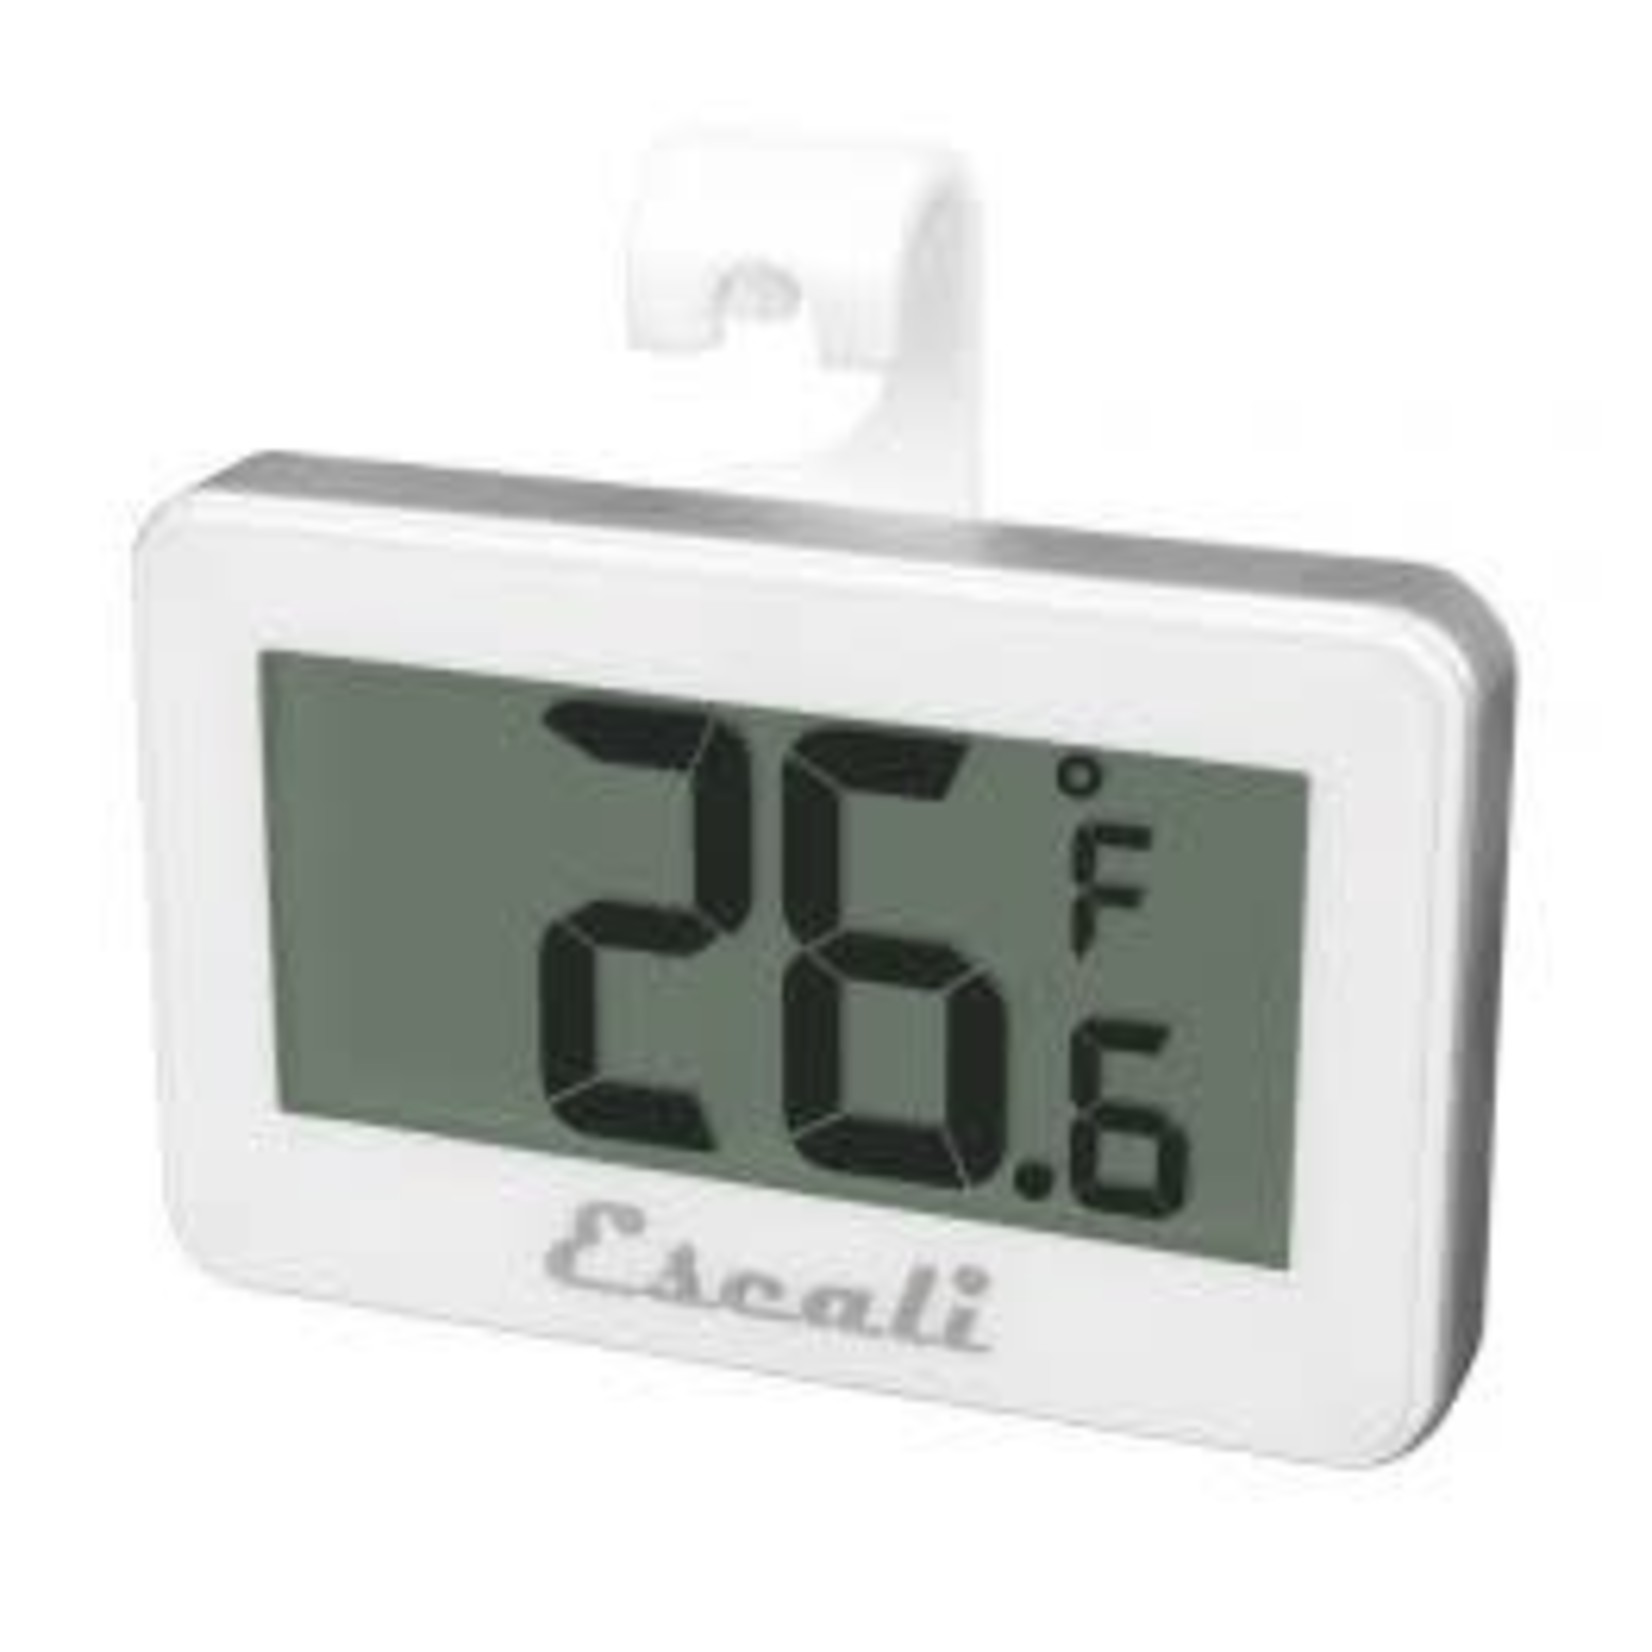 ESCALI ESCALI Digital Refrigerator / Freezer Thermometer